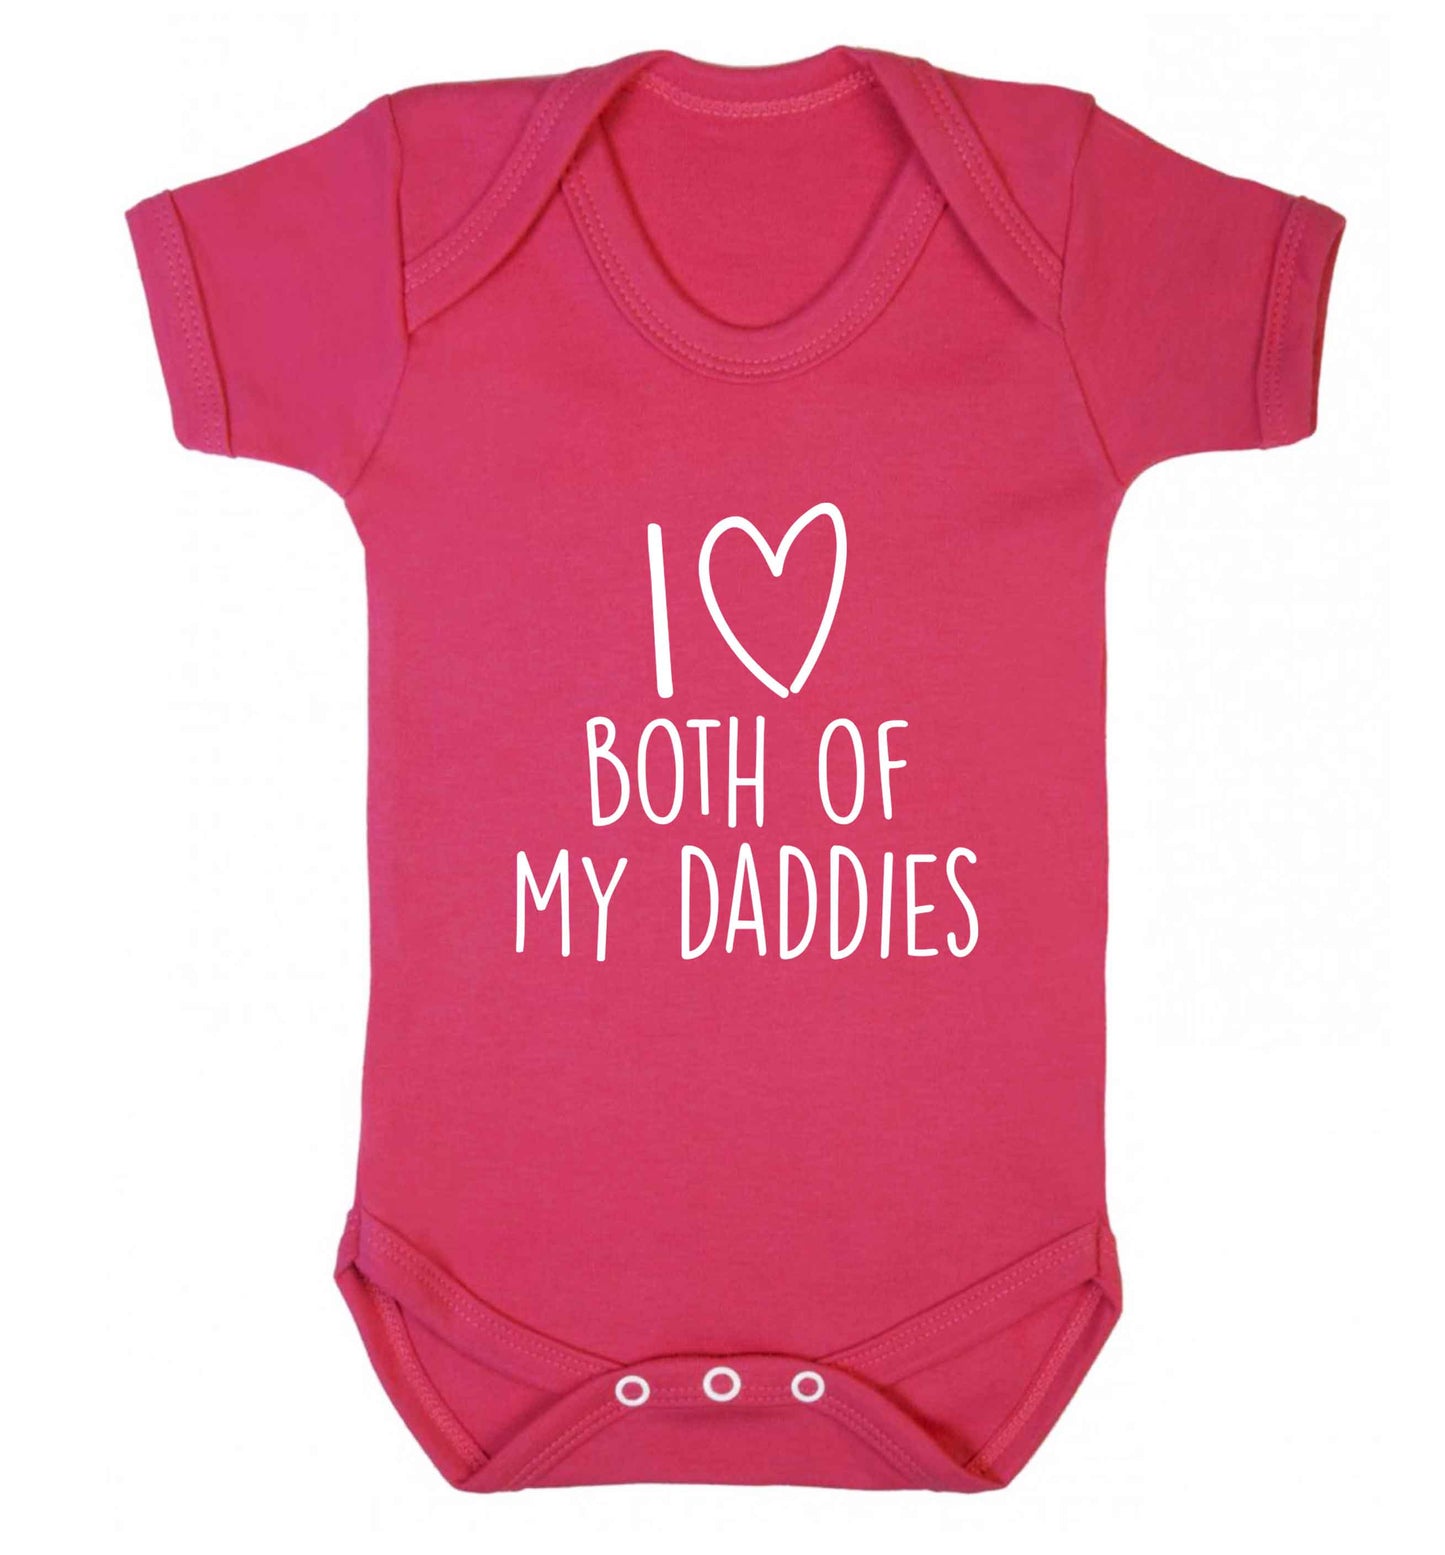 I love both of my daddies baby vest dark pink 18-24 months